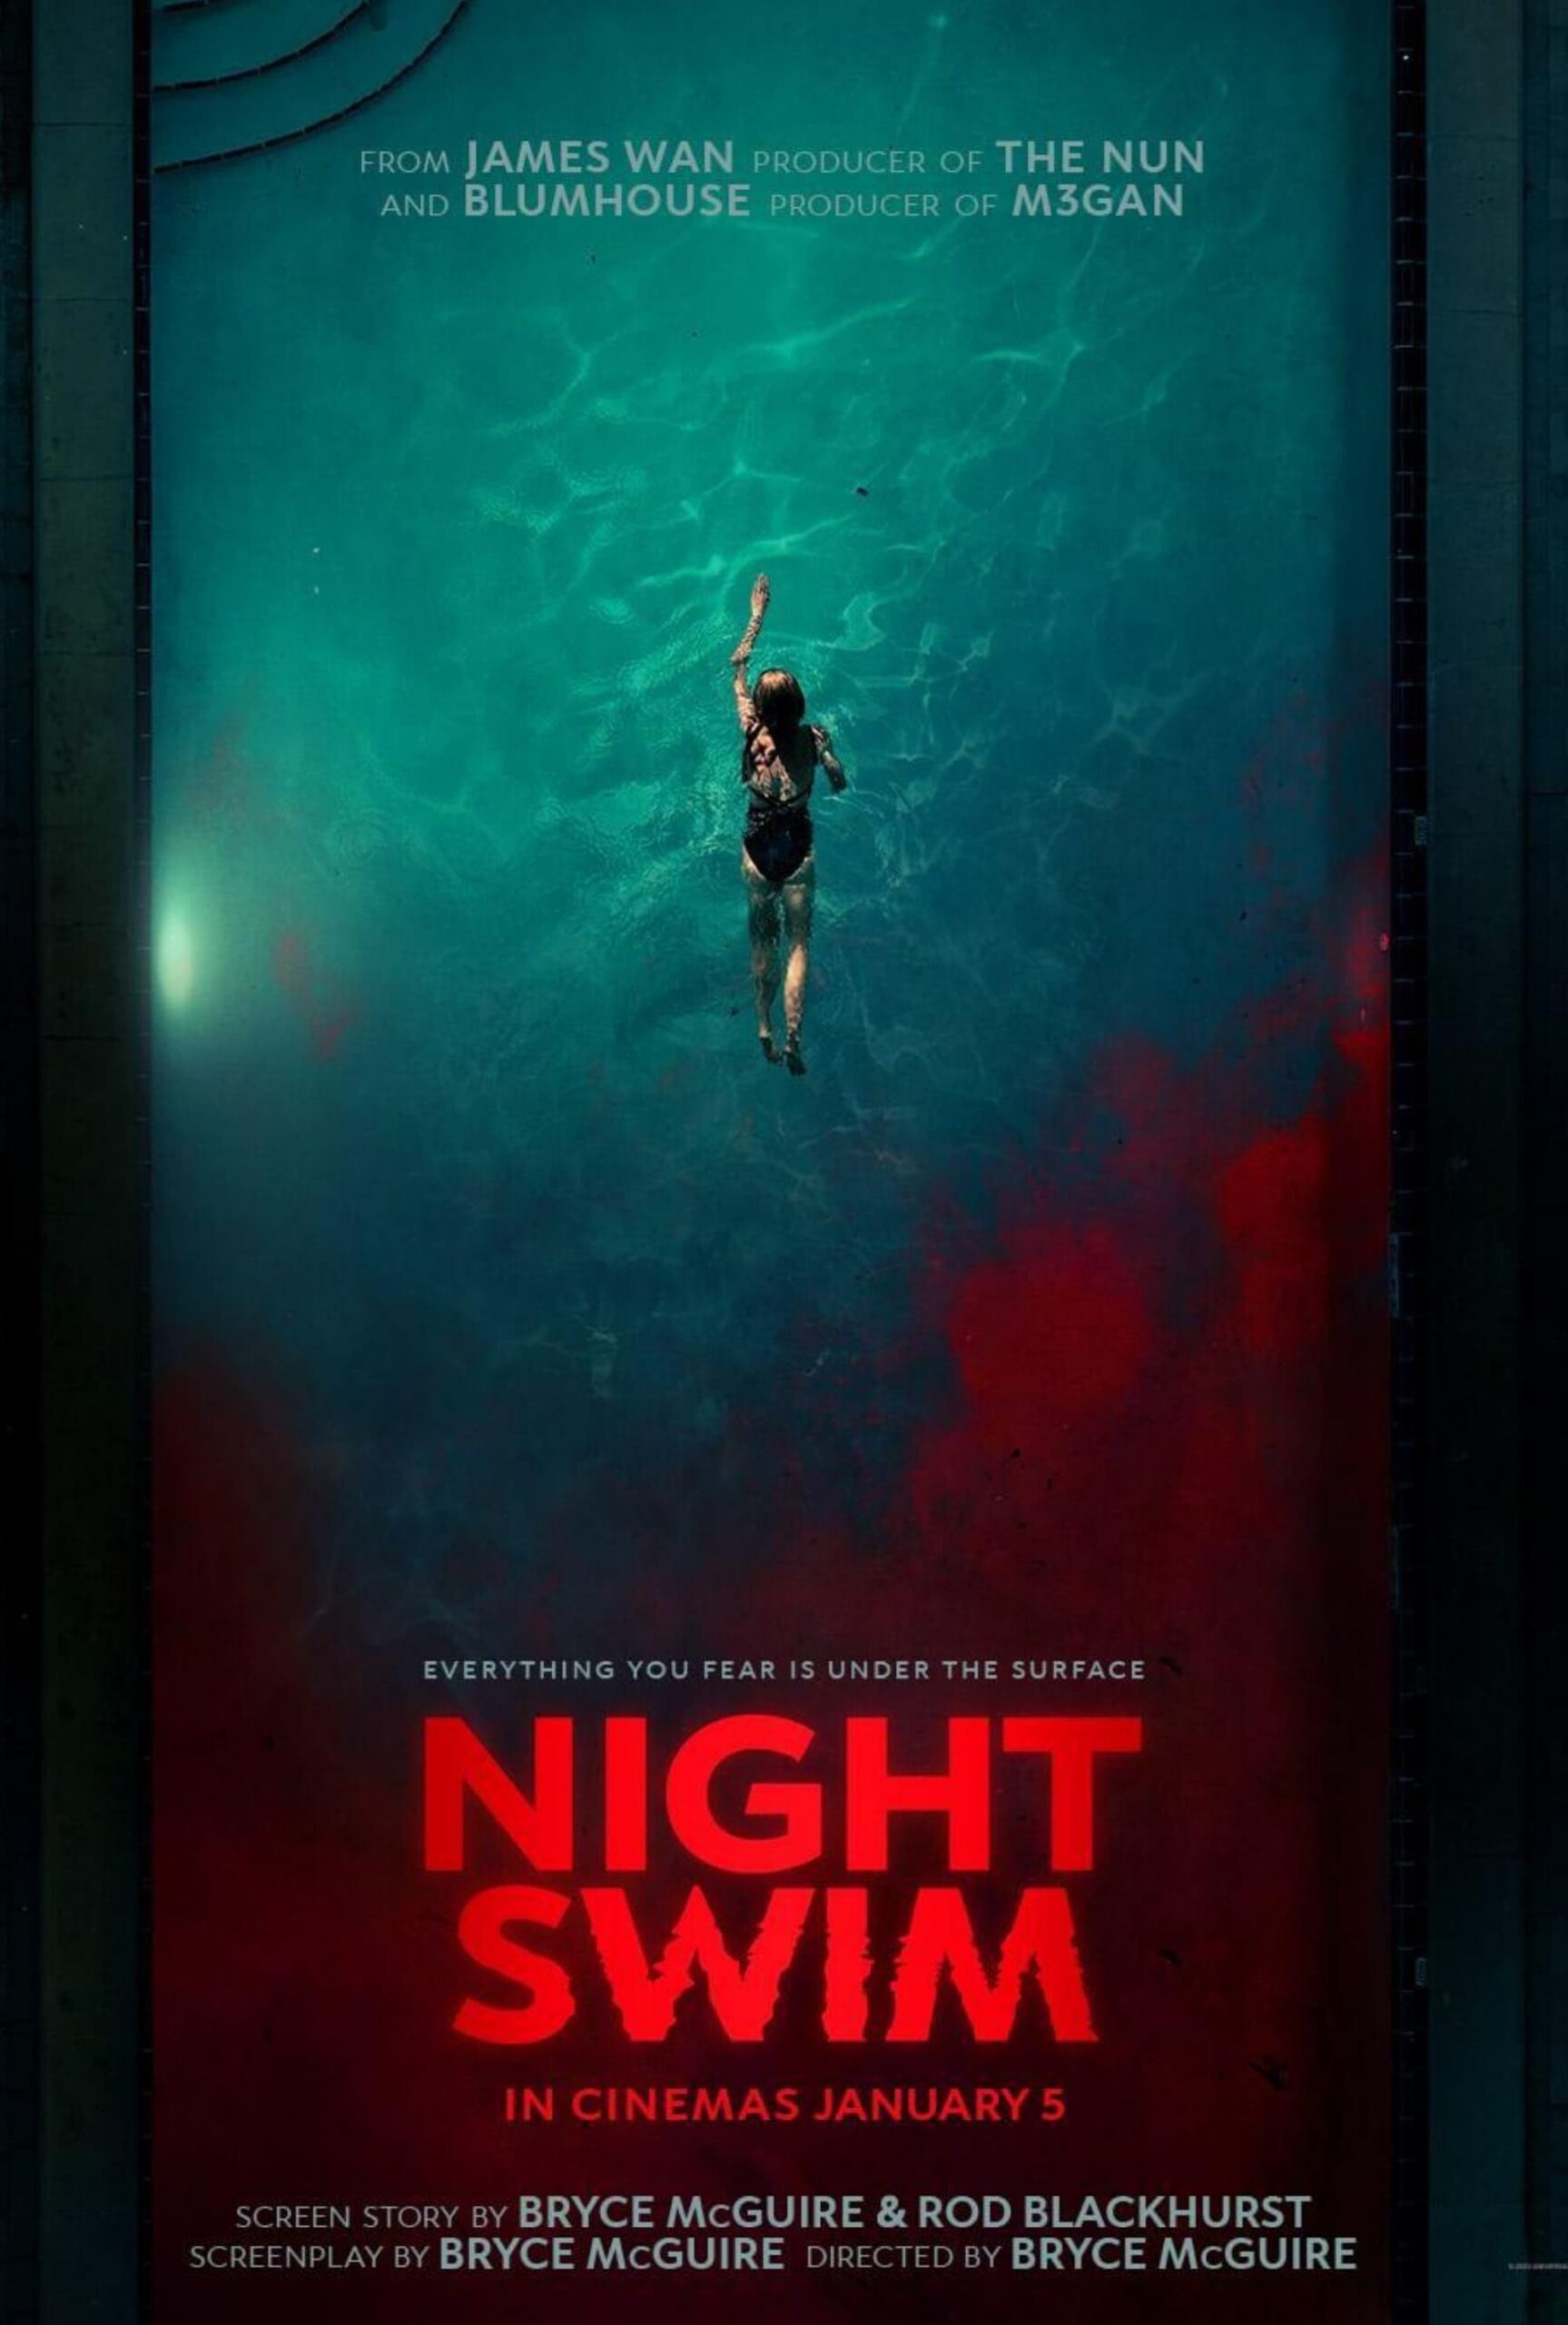 La locandina e la recensione del film horror Night Swim